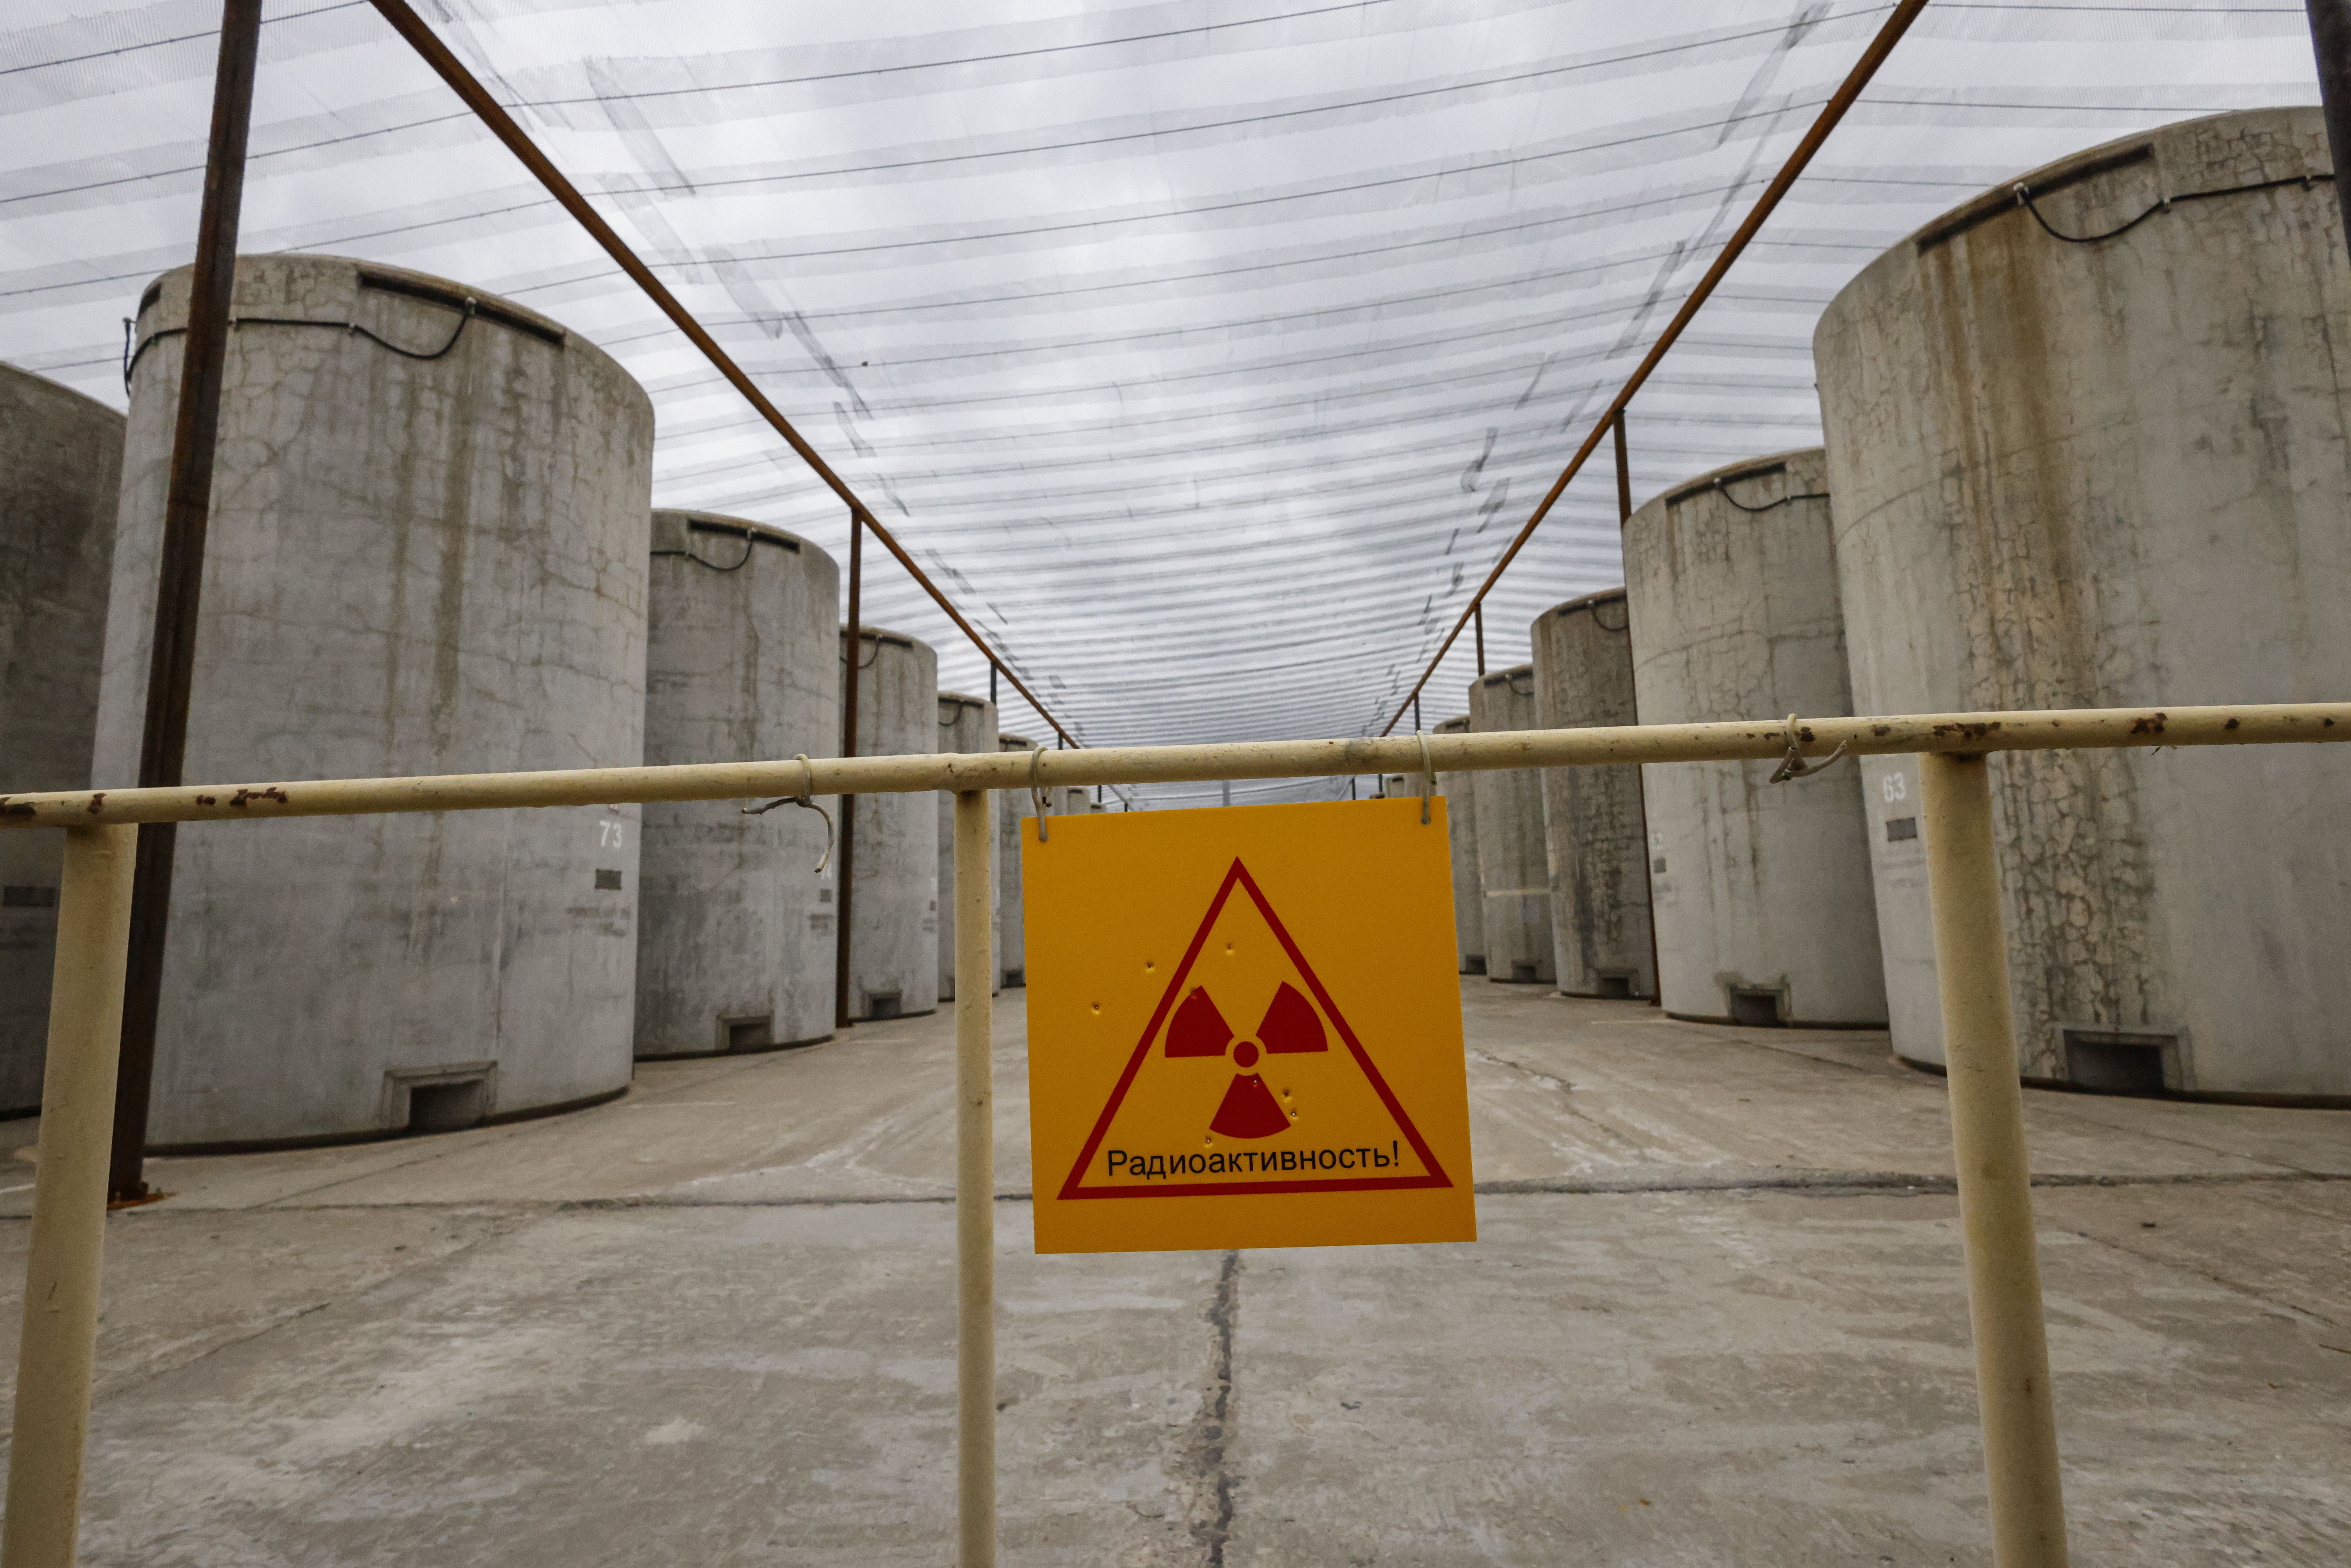 Zaporizhiako zentral nuklearrari iazko martxoan egindako argazki bat. SERGEI ILNITSKI / EFE